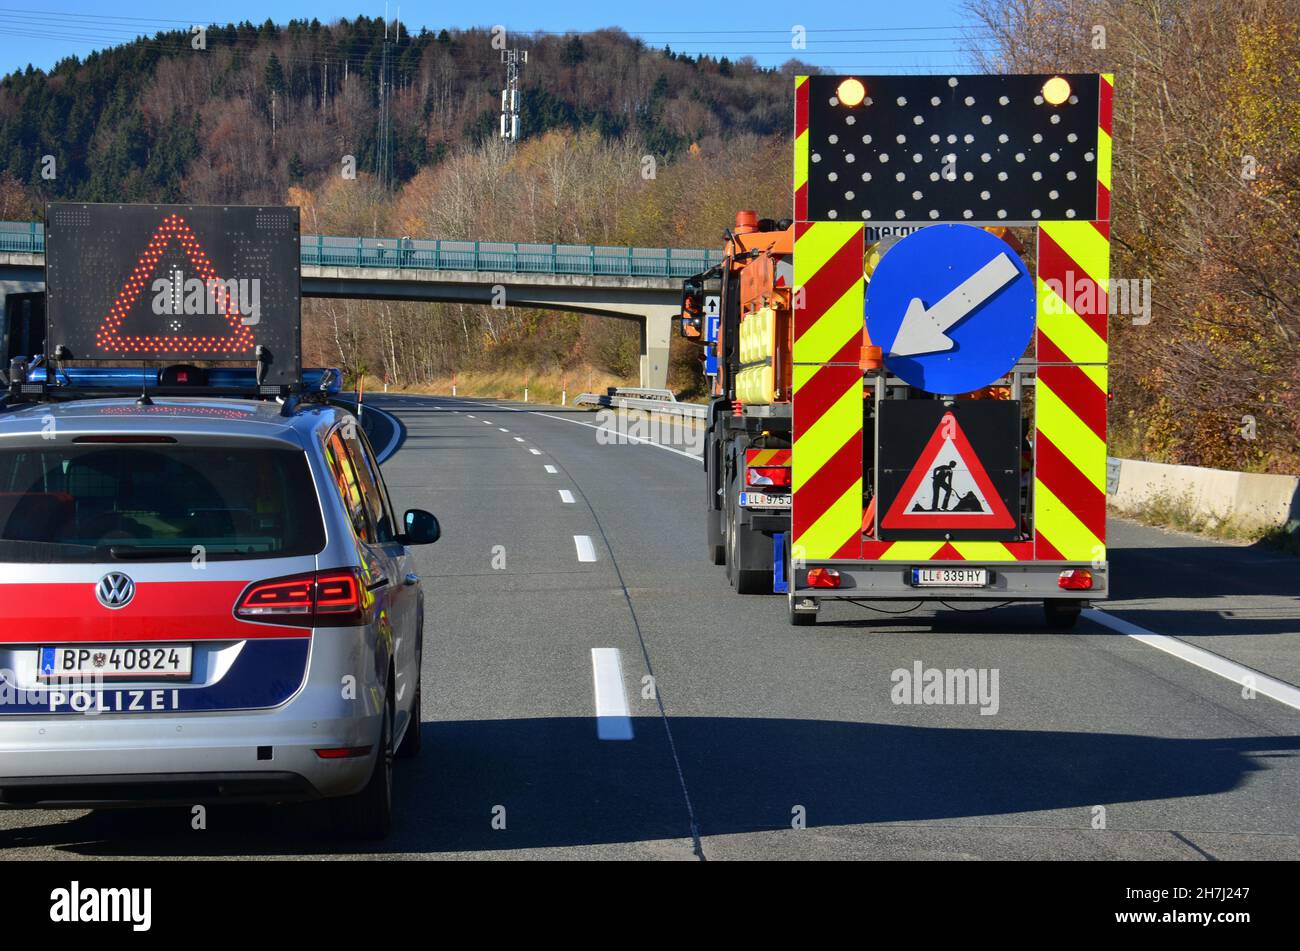 Sperre der Autobahn A1 bei Oberwang wegen Arbeiten an einer Stromleitung, Oberösterreich, Österreich, Europa - Closure of the A1 motorway near Oberwan Stock Photo